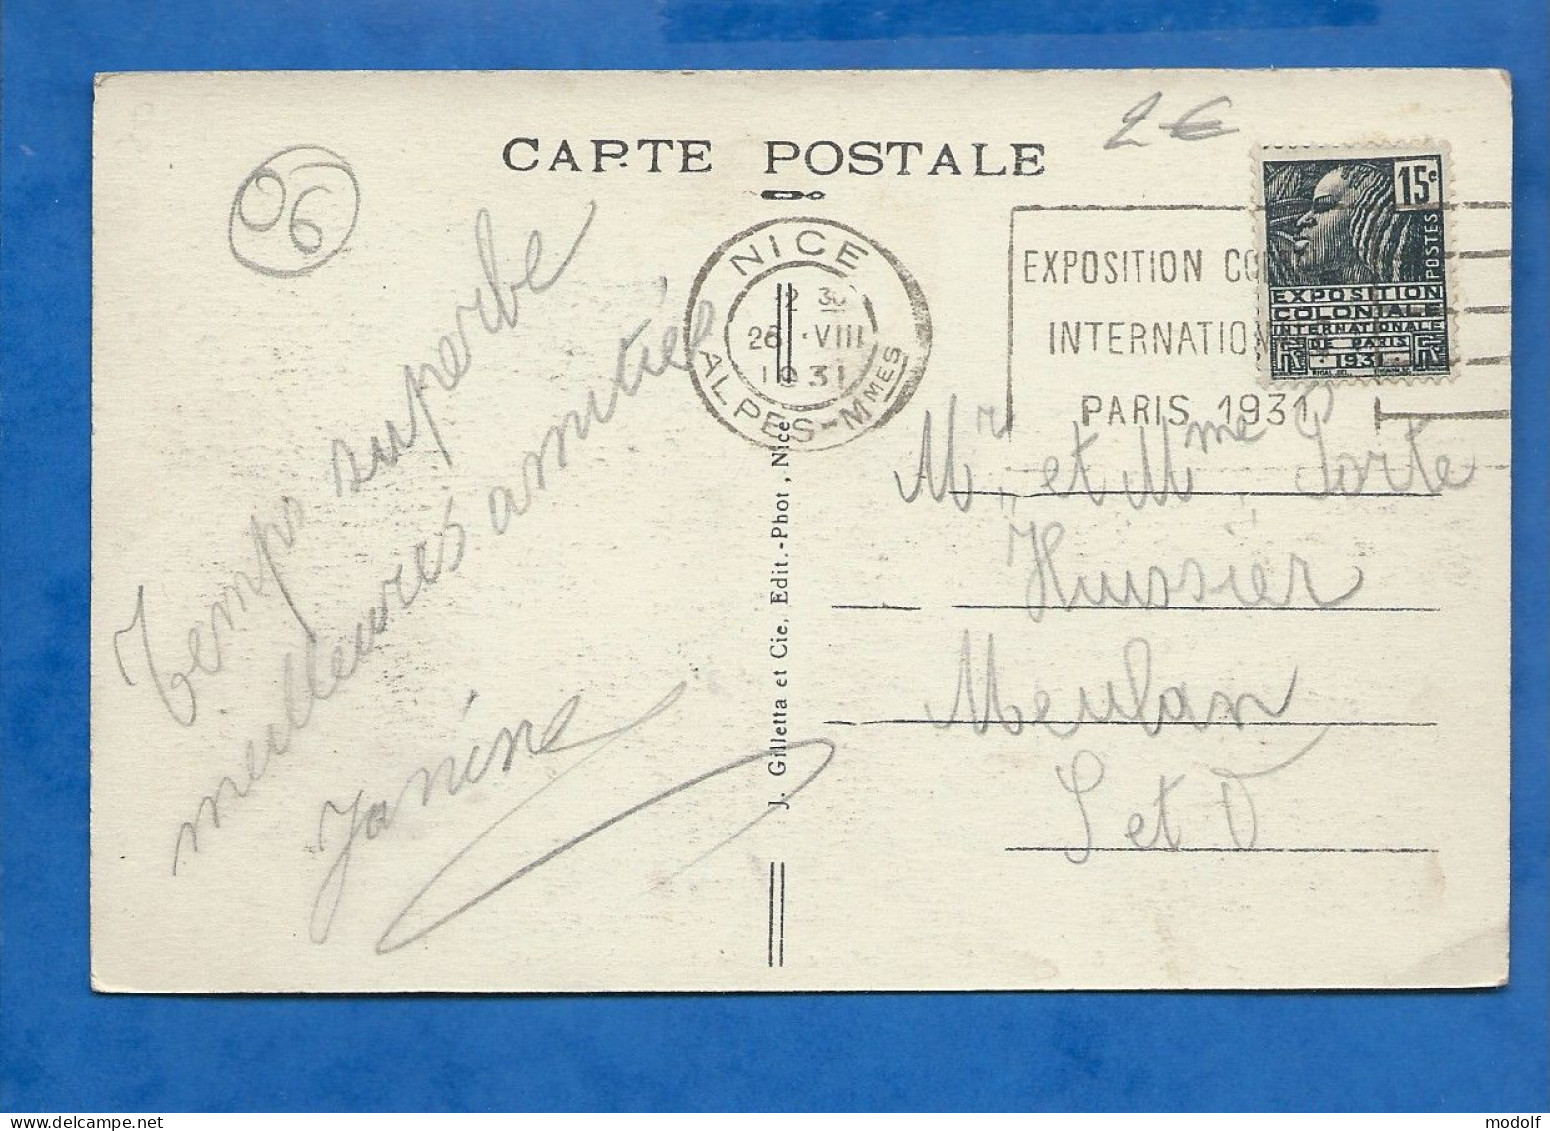 CPA - 06 - Nice - Entrée Du Port - Mont Boron - Circulée En 1931 - Transport (sea) - Harbour